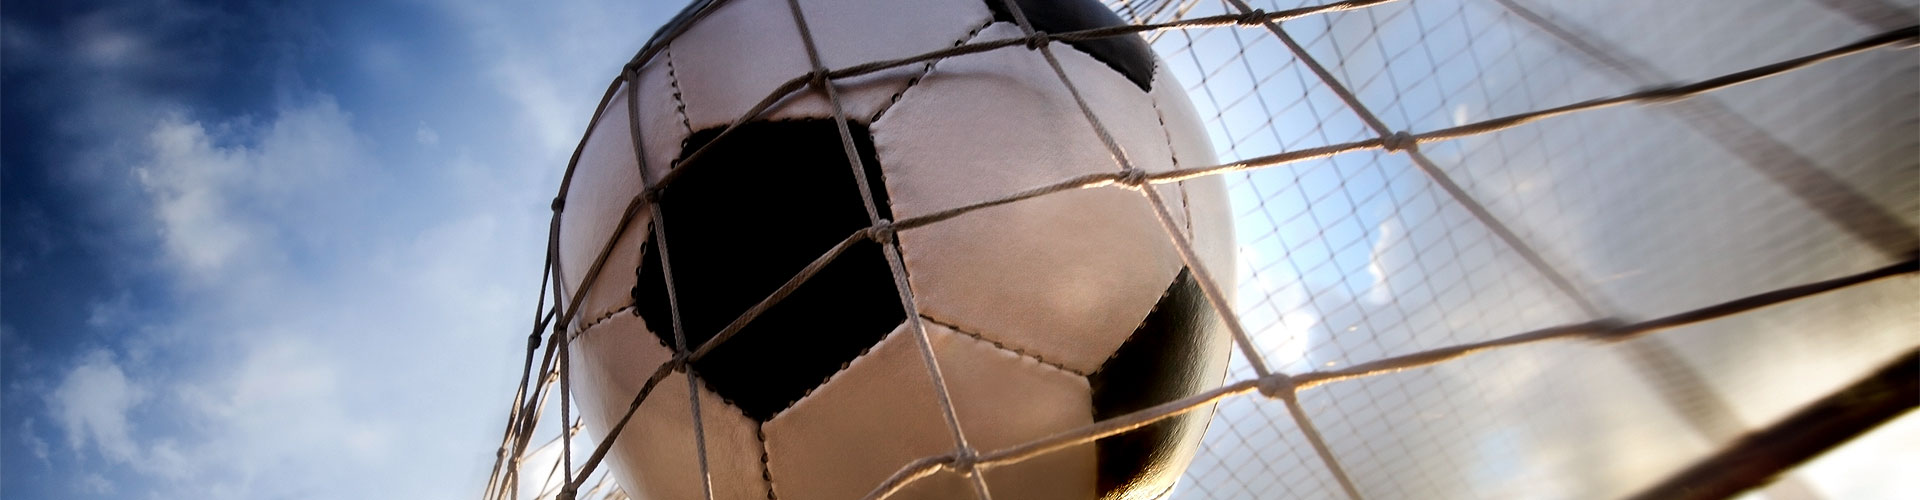 Ver la Eurocopa 2020 de fútbol en vivo en Santa María de la Alameda